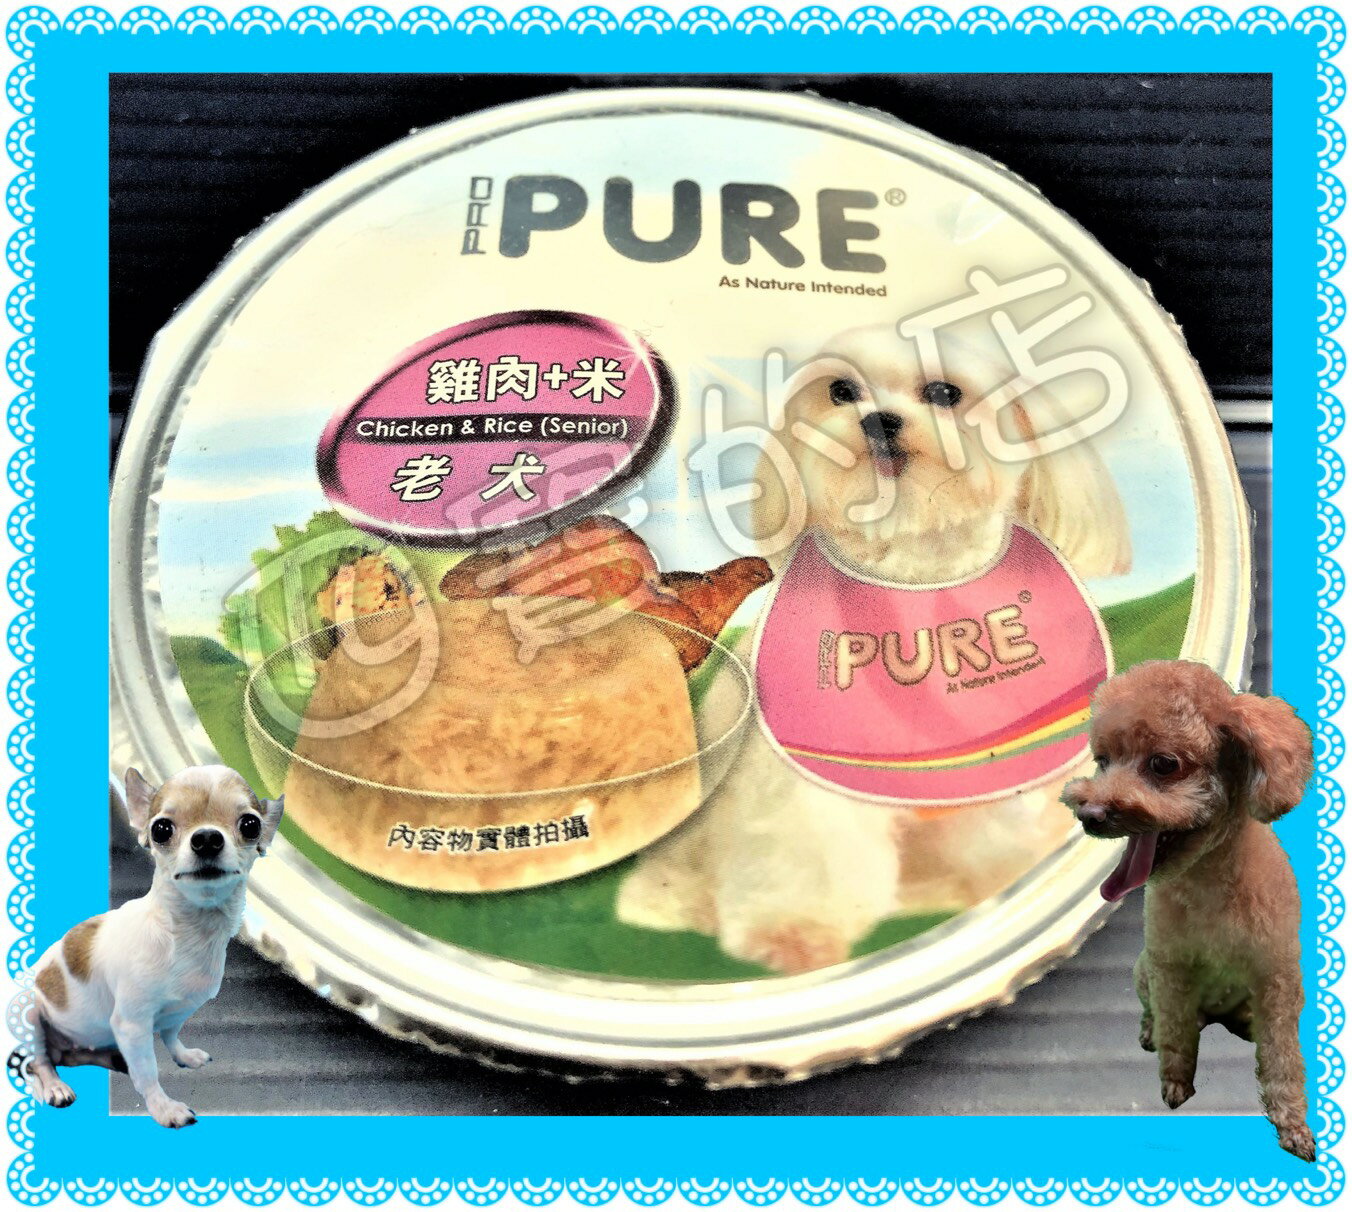 ✪四寶的店n✪猋➤(老犬)雞肉+米 80g/罐 ➤六種口味 PURE PUREP 巧鮮杯 猋 犬 罐頭 狗 餐盒 鋁箔杯